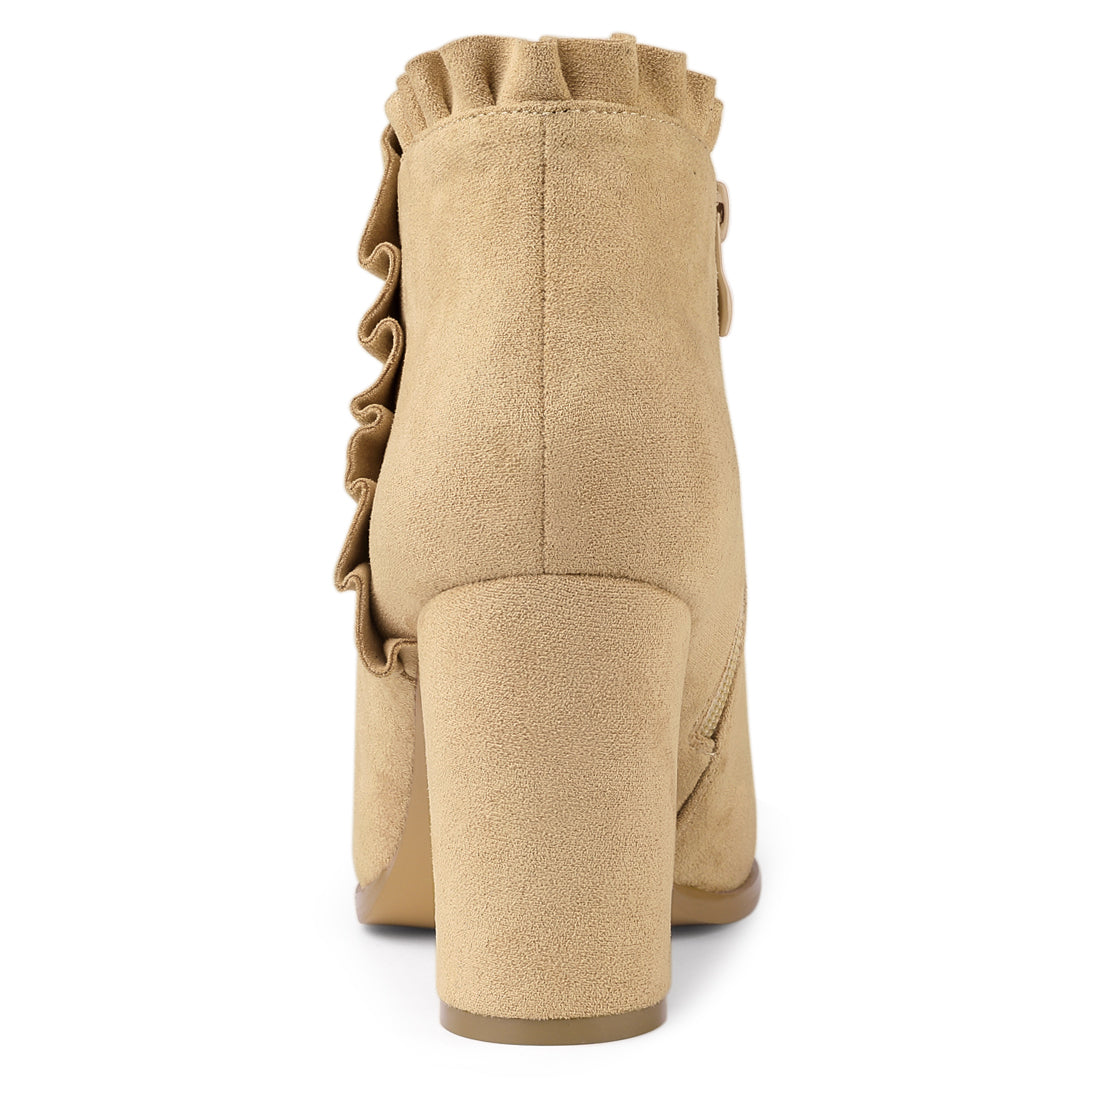 Allegra K Pointed Toe Ruffle Block Heel Side Zipper Ankle Boots